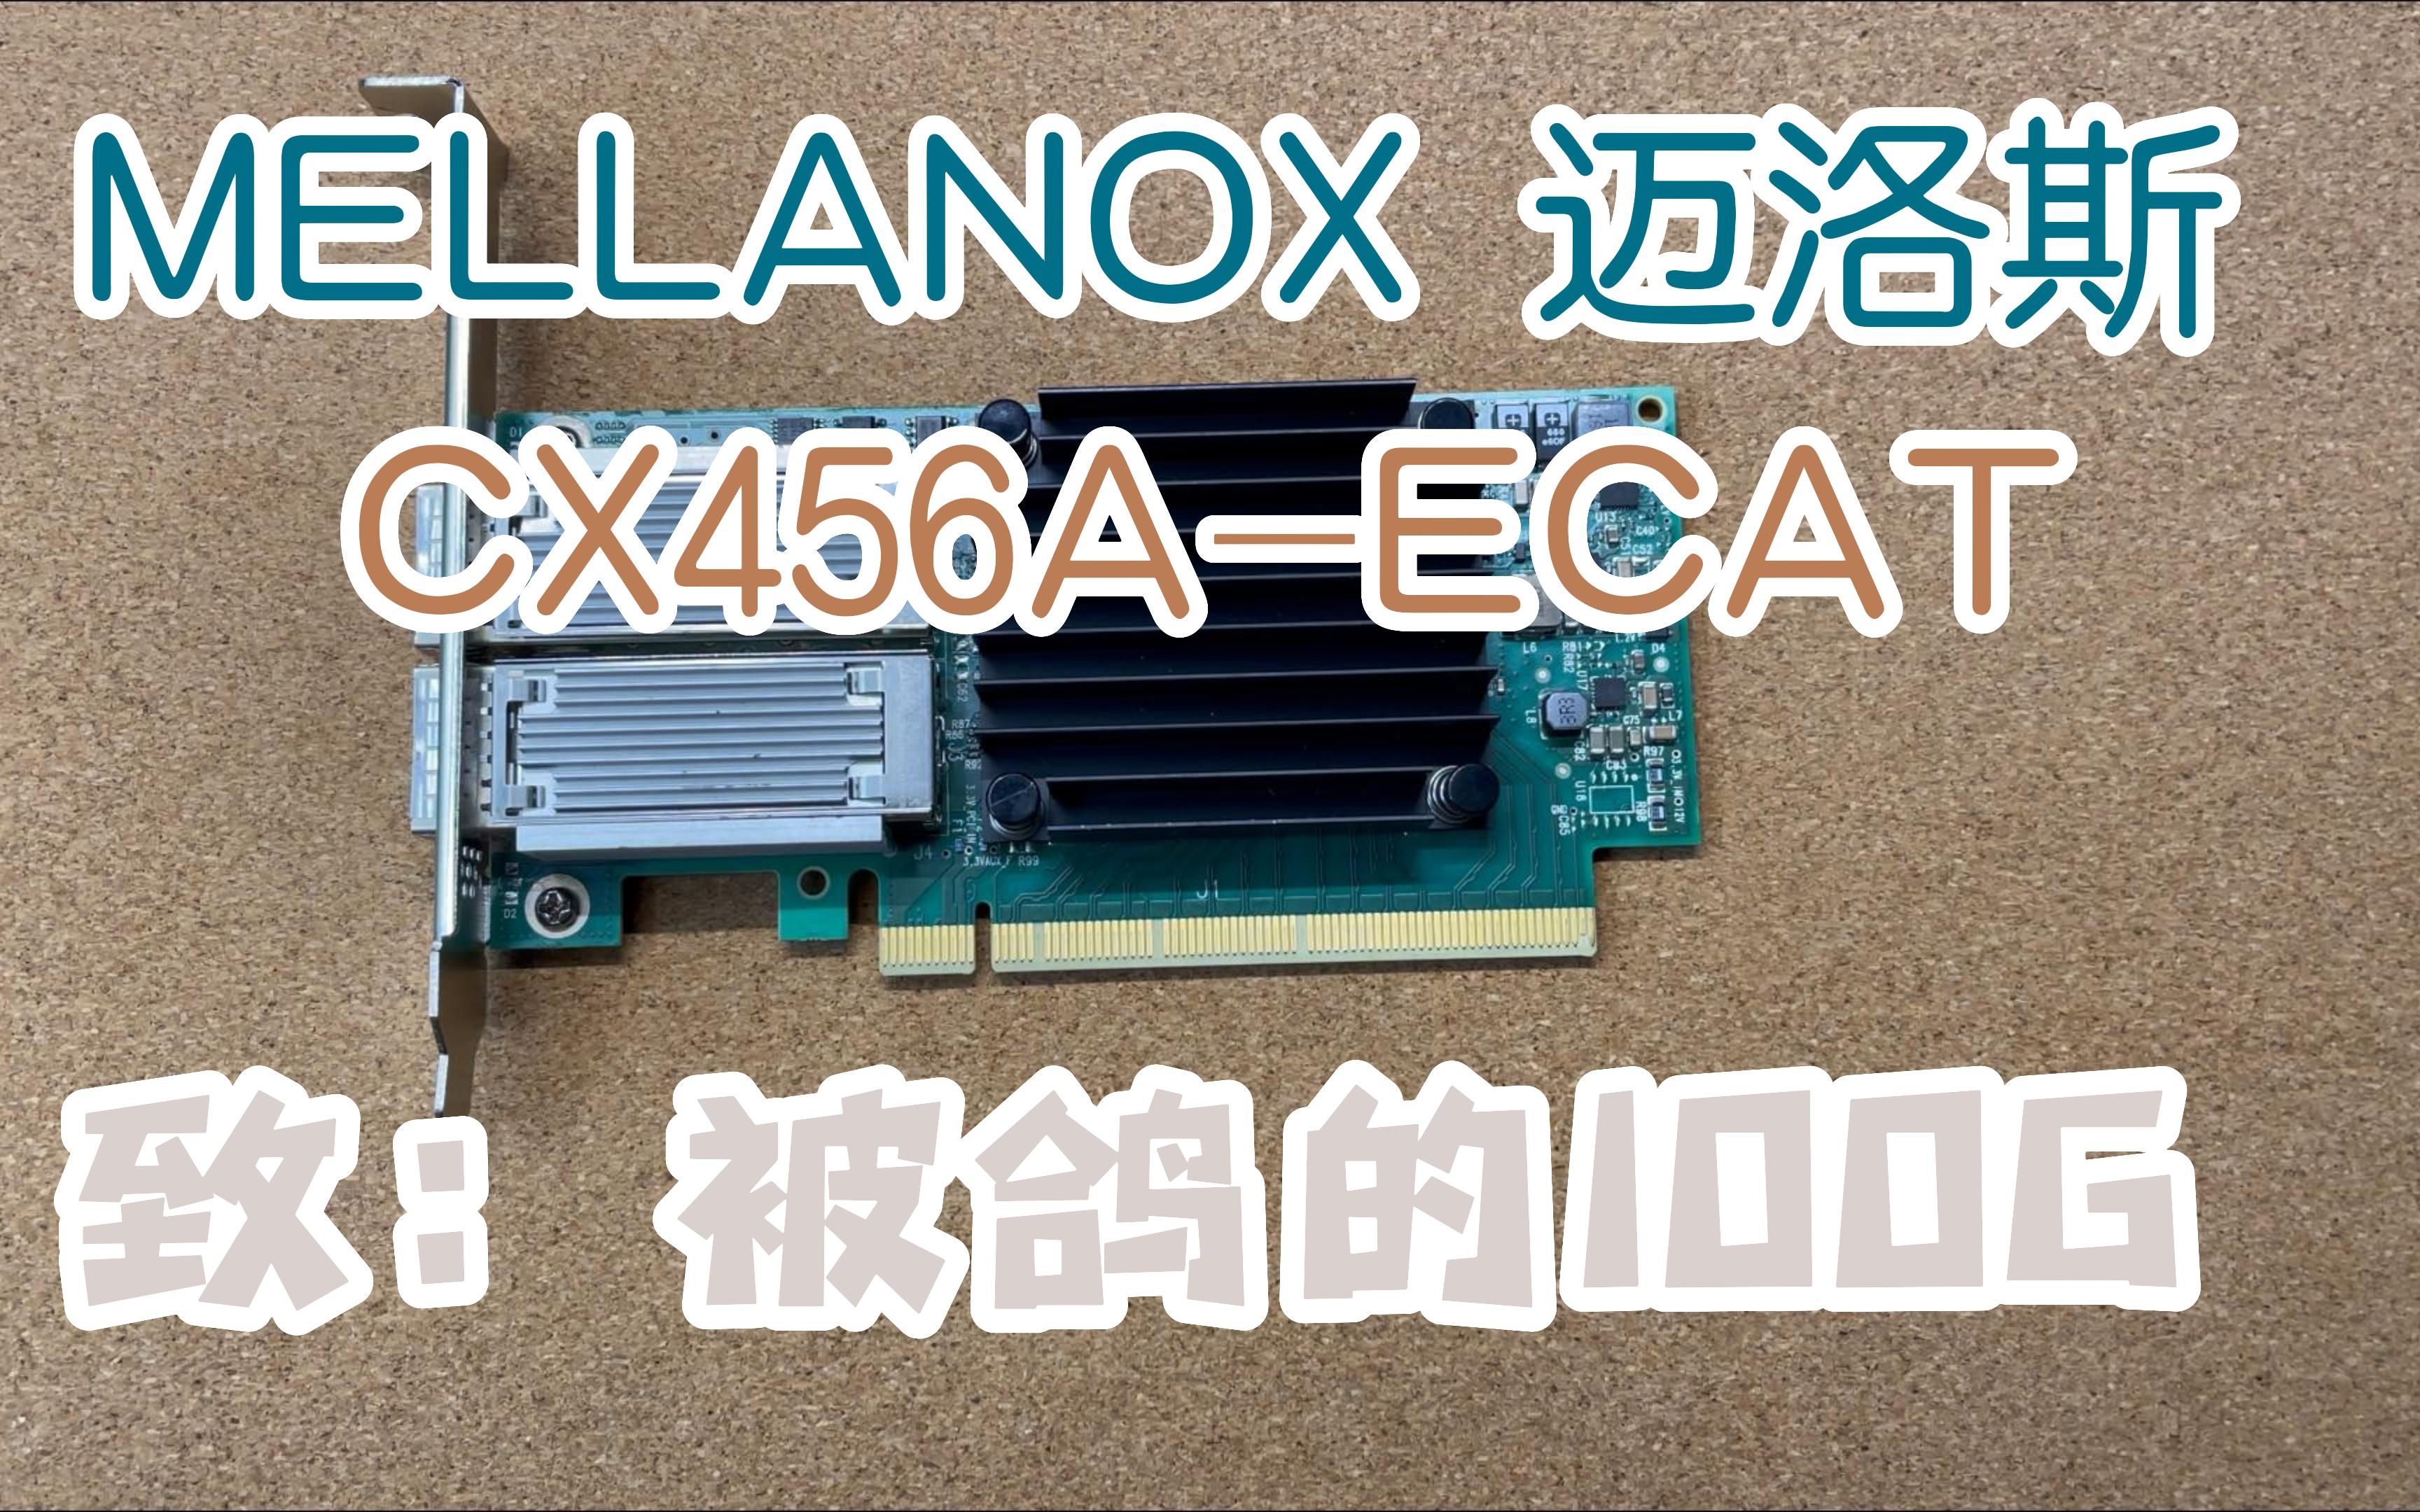 MCX456A-ECAT 被鸽了的100G